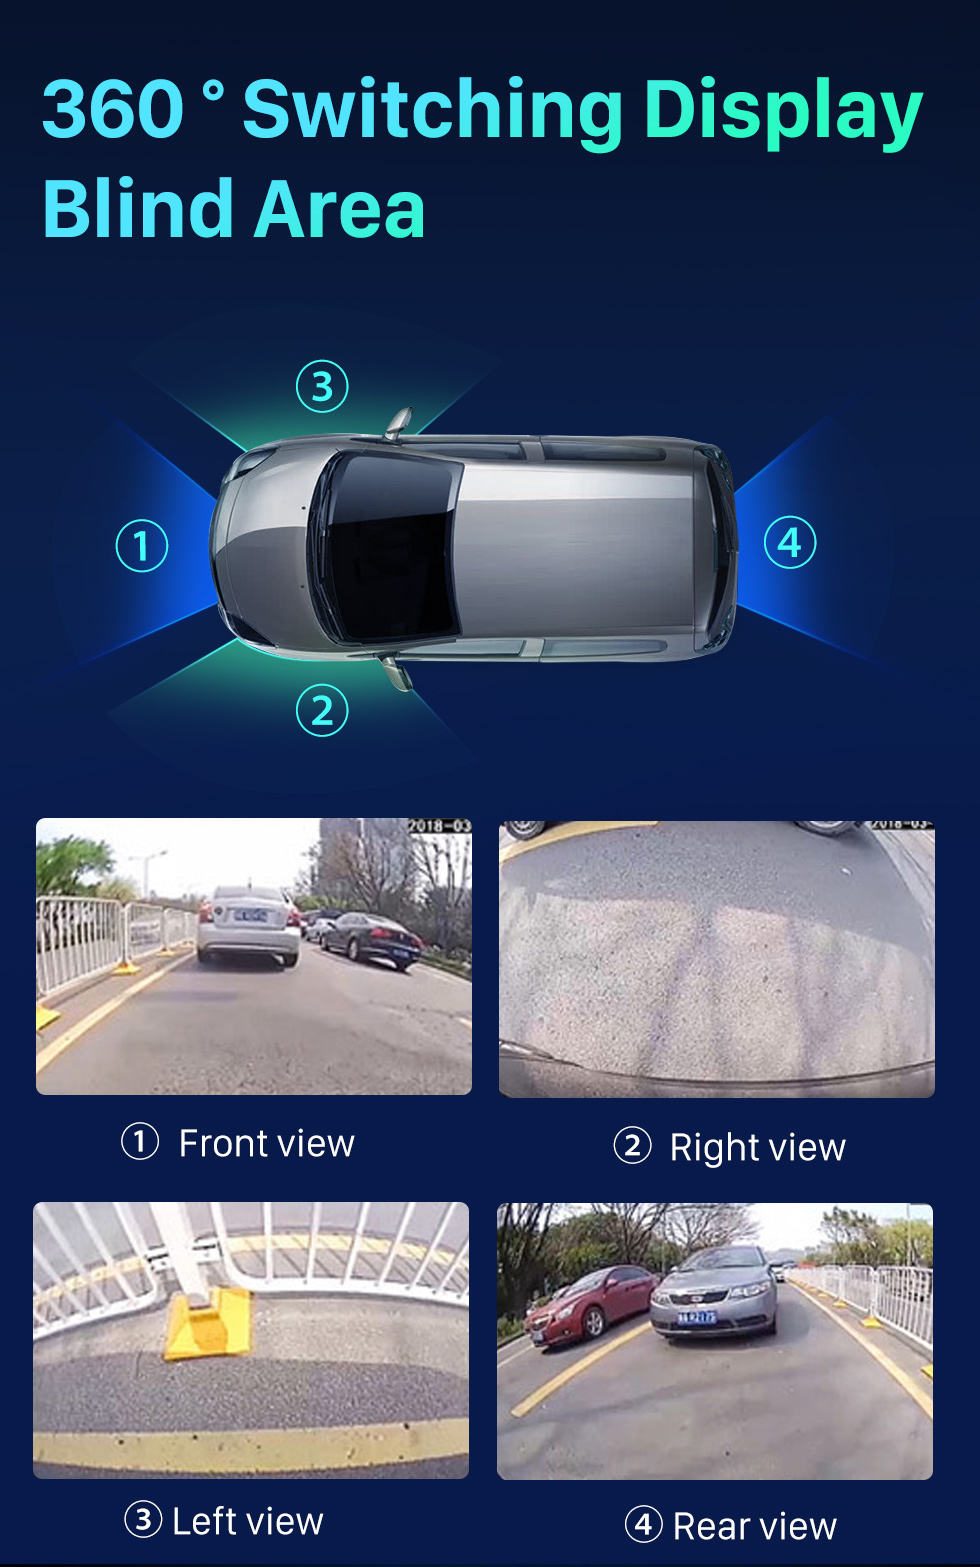 Faut-il avoir une caméra à 360 degrés dans sa voiture ?